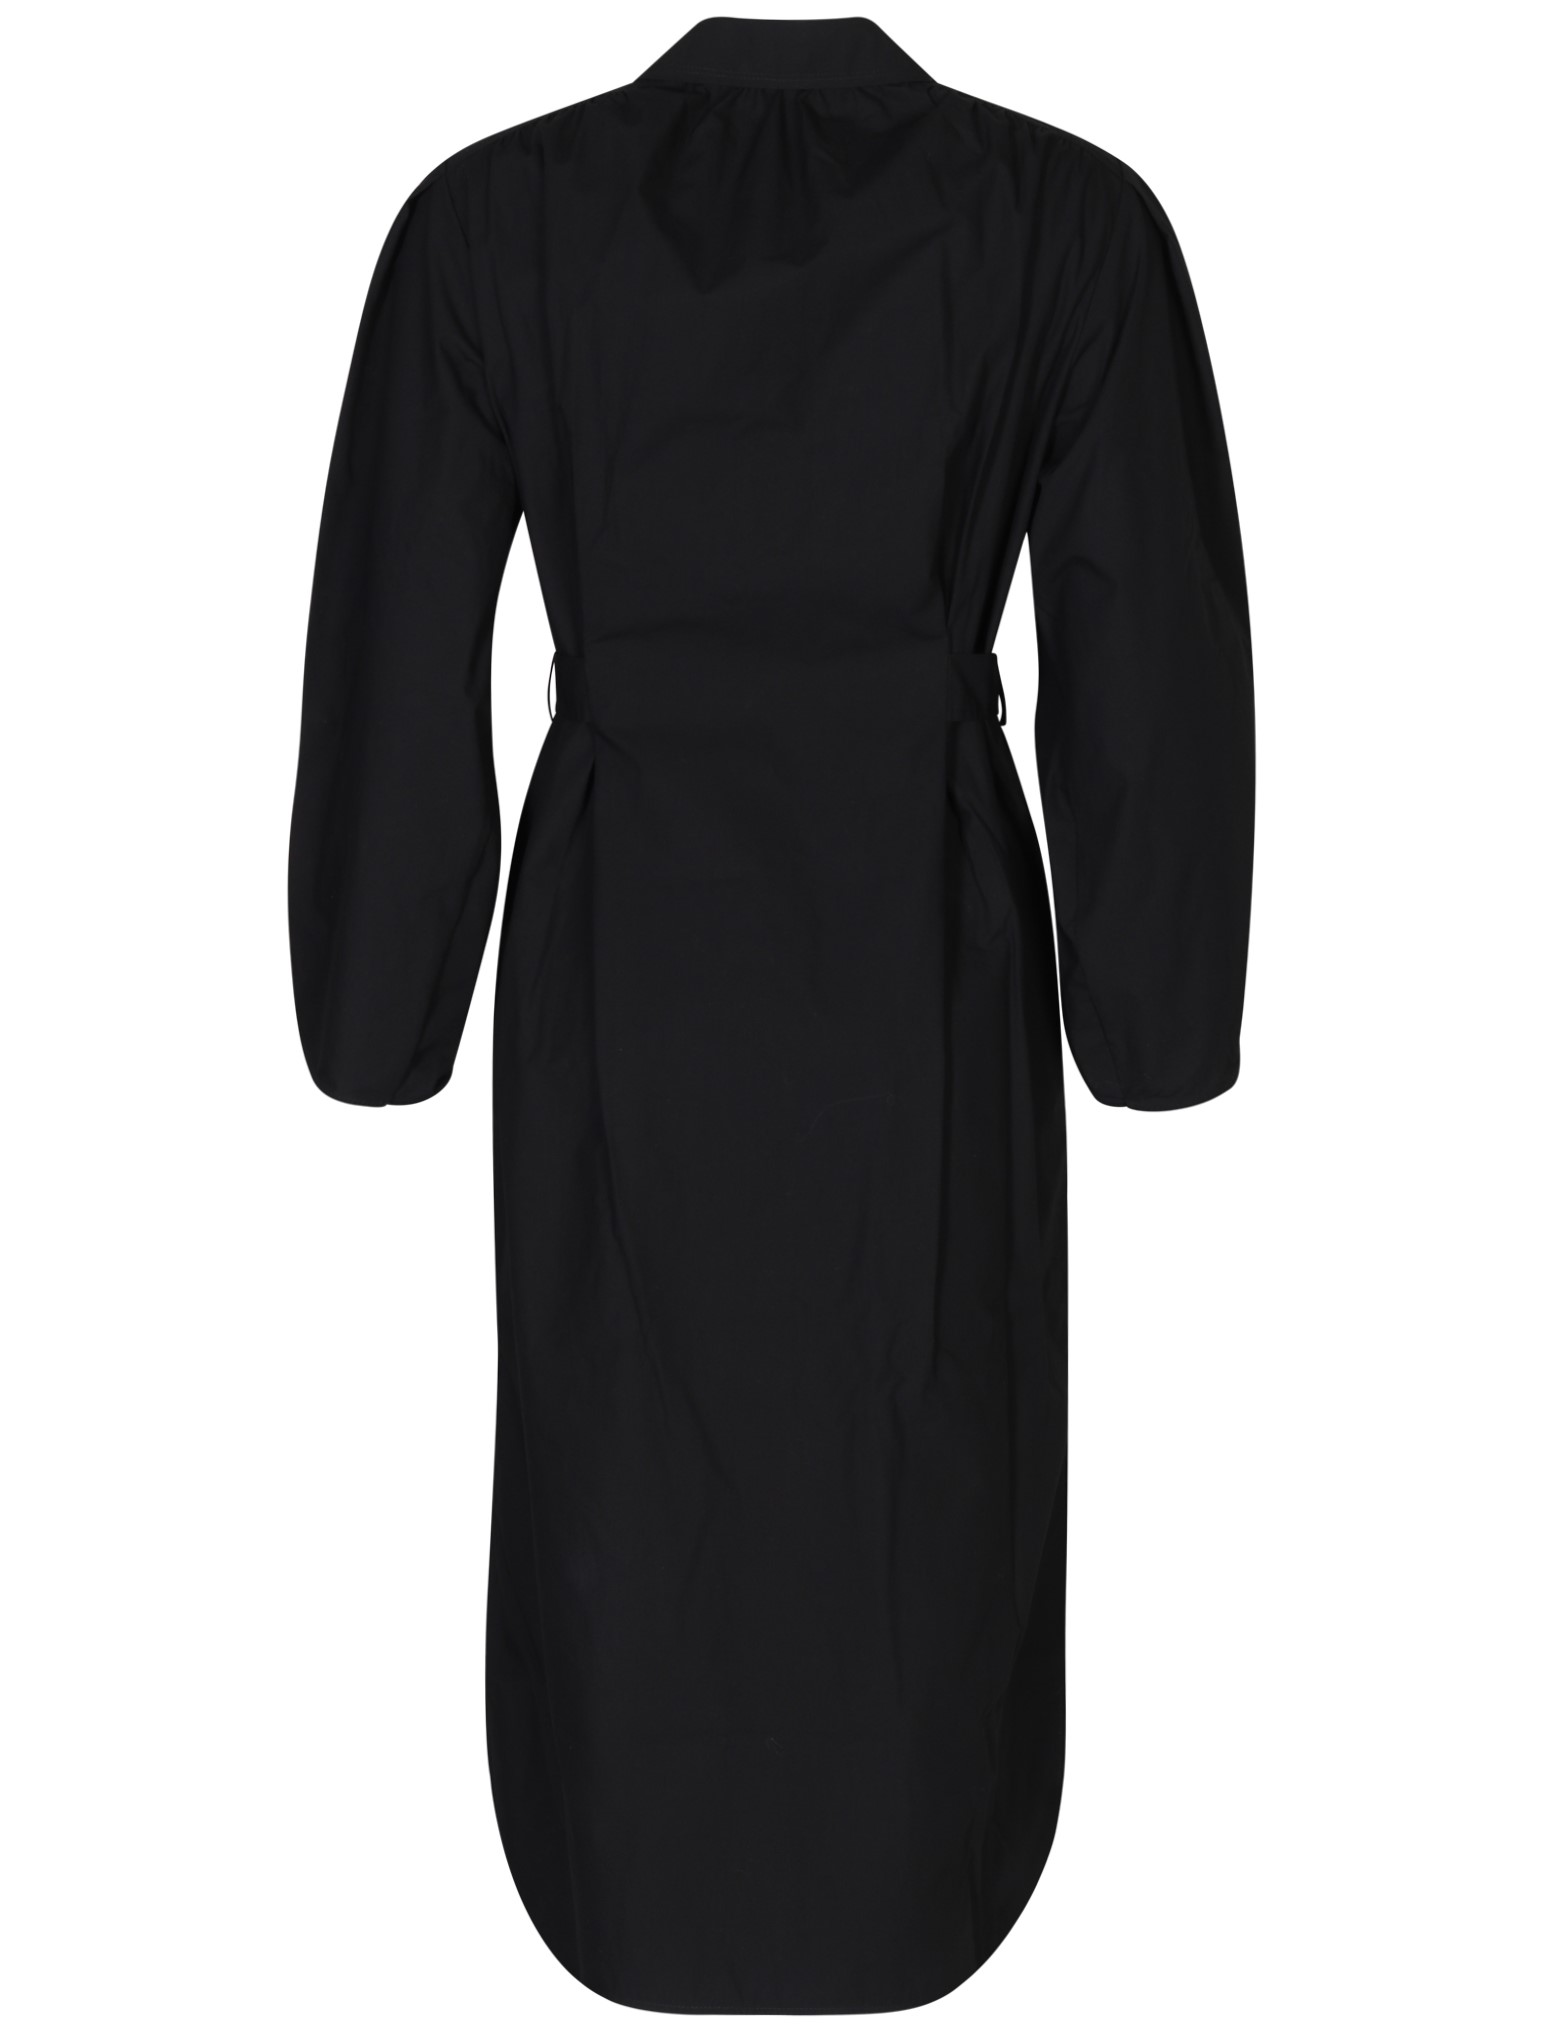 SOCIÉTÉ ANGELIQUE Ana Cotton Dress in Black 36